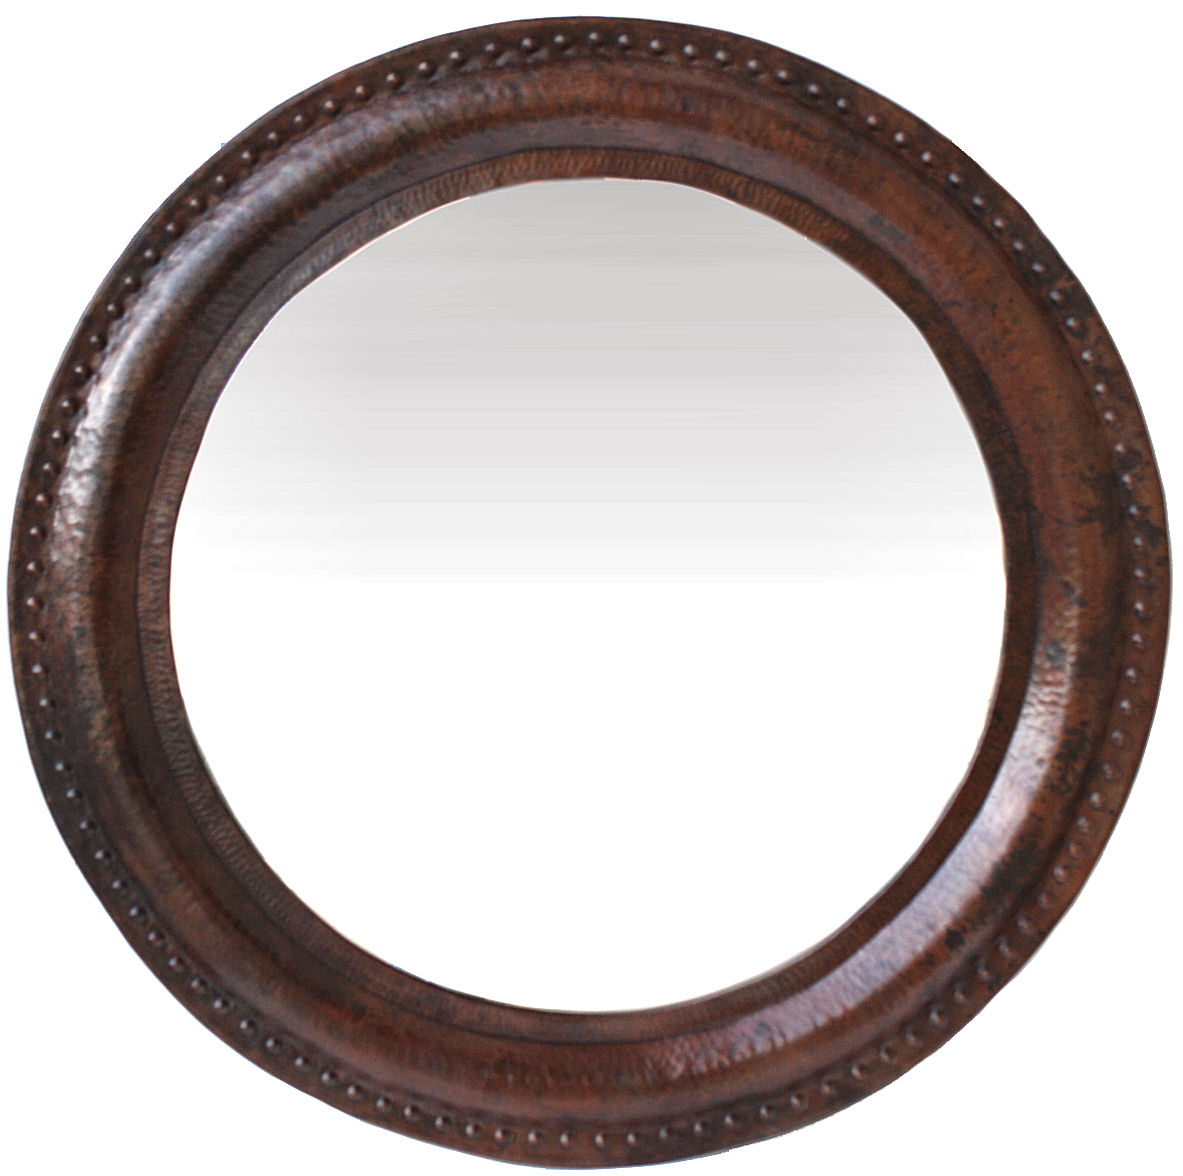 Big Round Hammered Copper Mirror